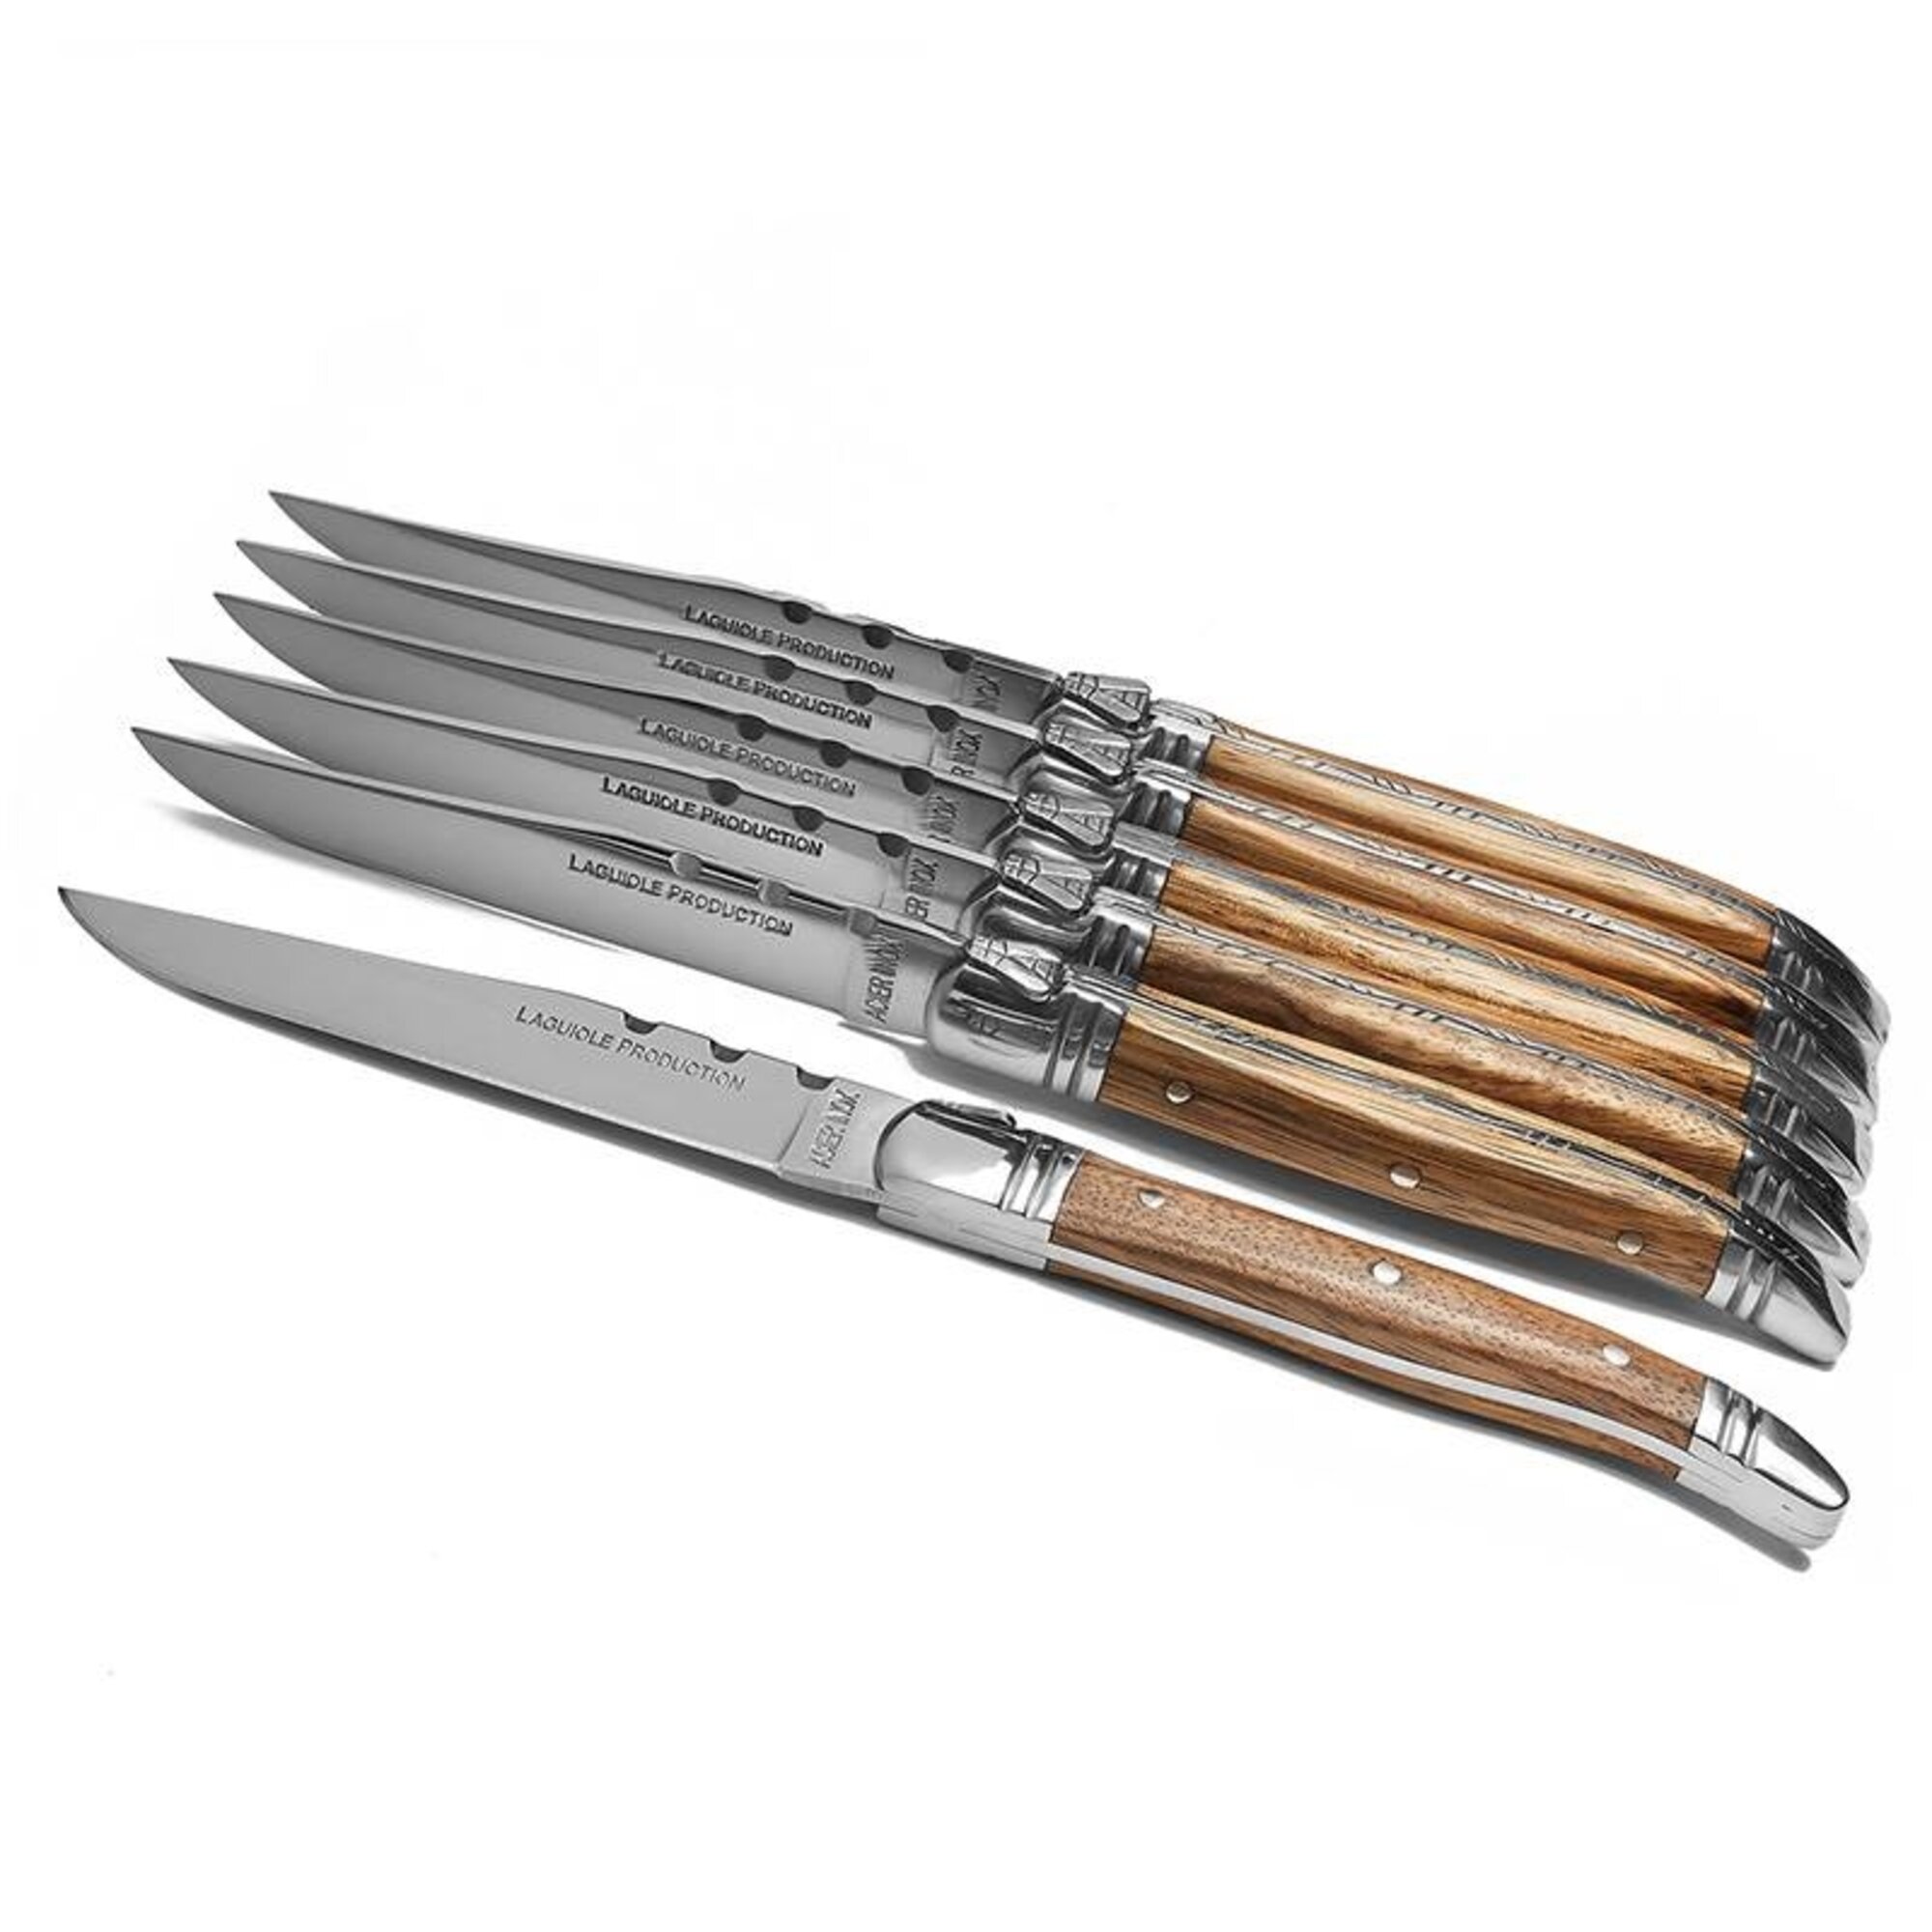 https://assets.wfcdn.com/im/34798361/compr-r85/1305/130543184/laguiole-evolution-6-piece-stainless-steel-steak-knife-set.jpg